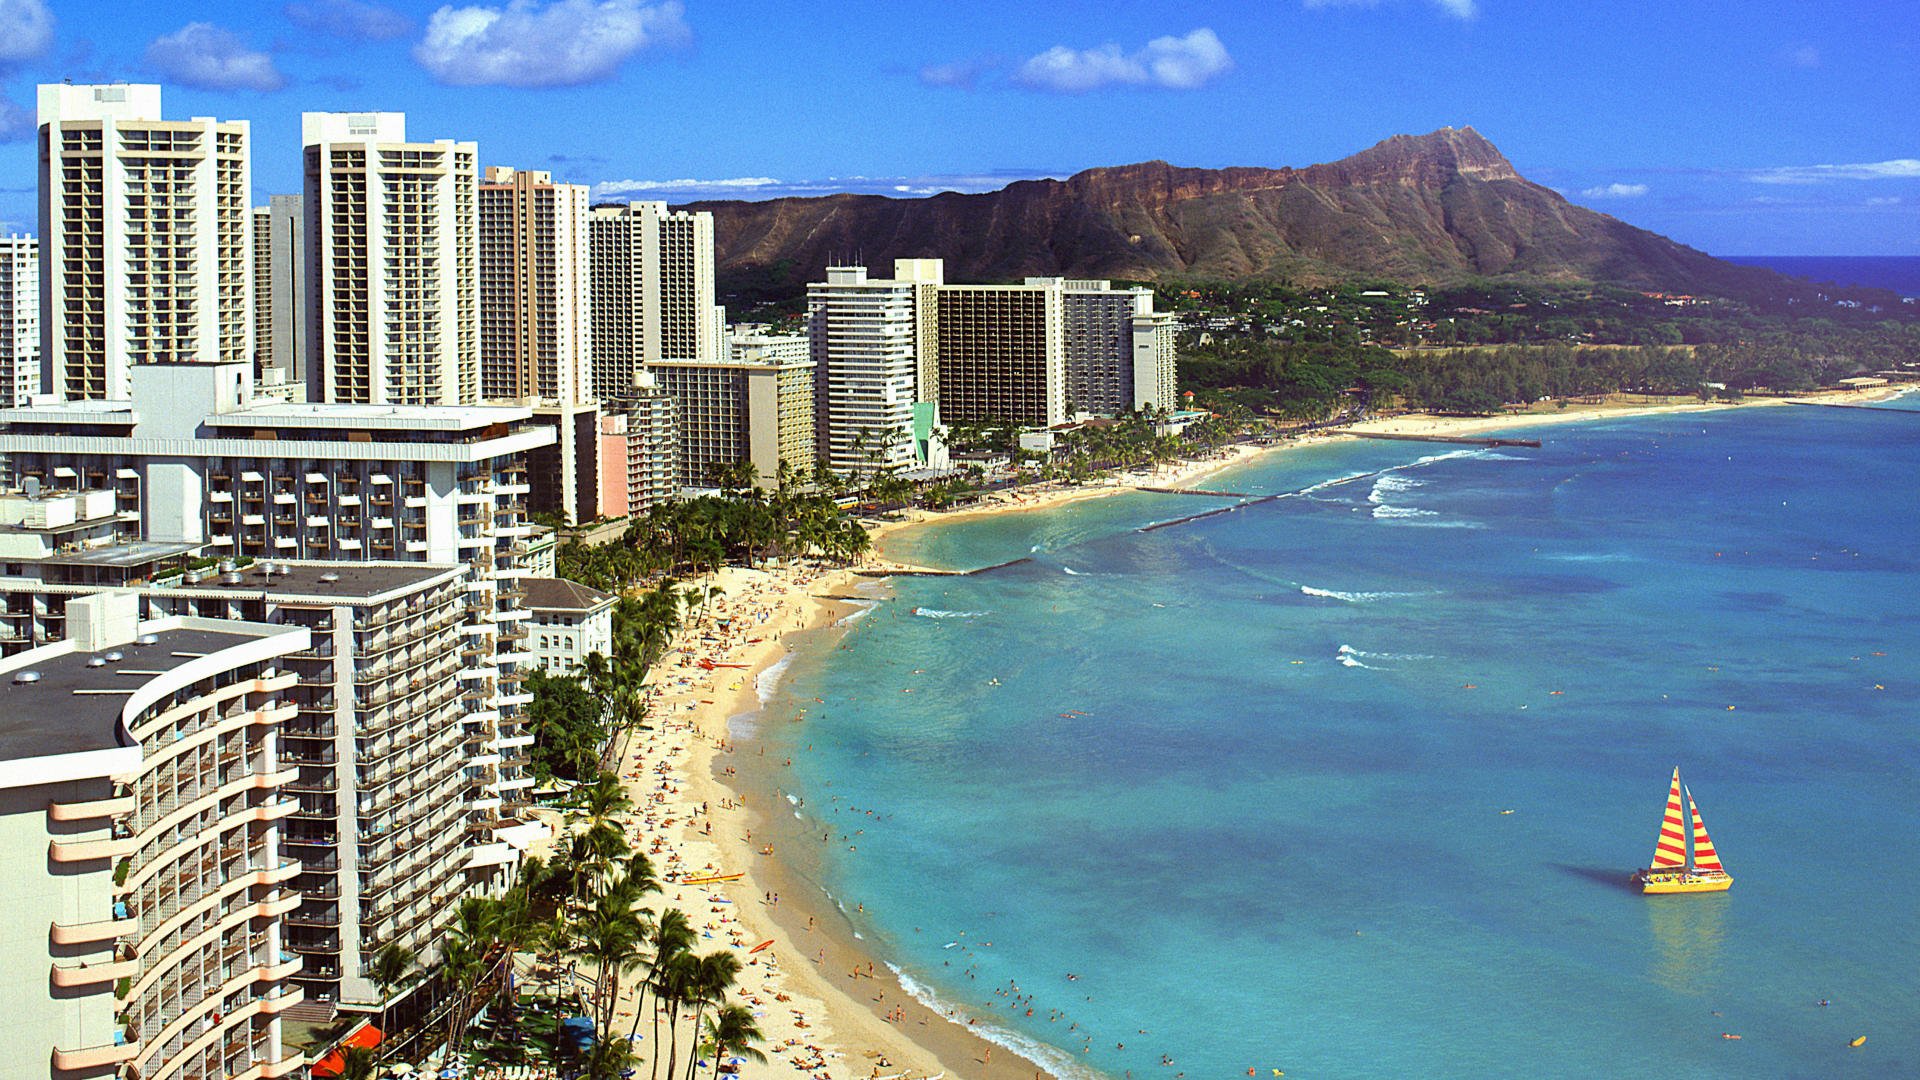 Waikiki HD Wallpaper Background Image Id